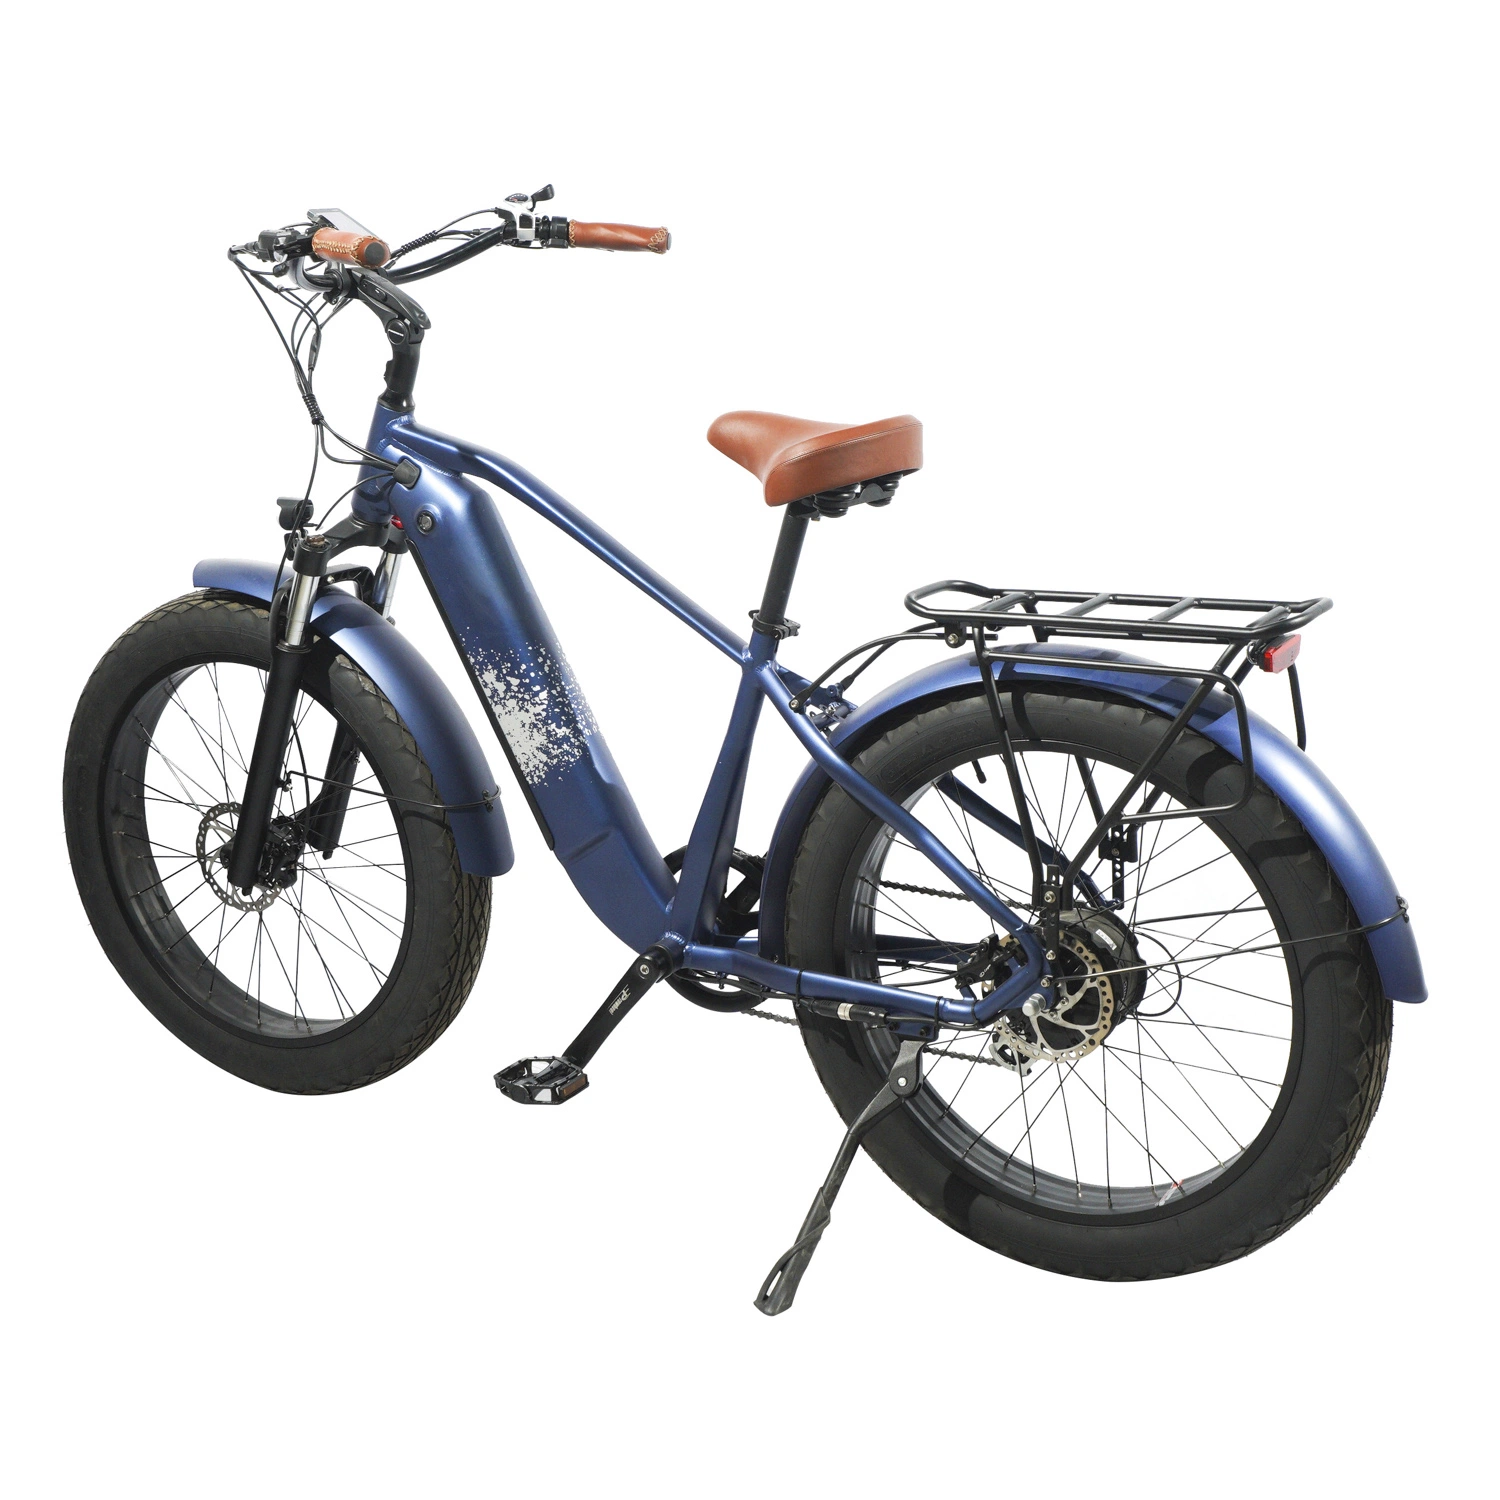 Barato adulto 750W 72V Electric Fat pneu bicicletas de terra batida Preços chineses